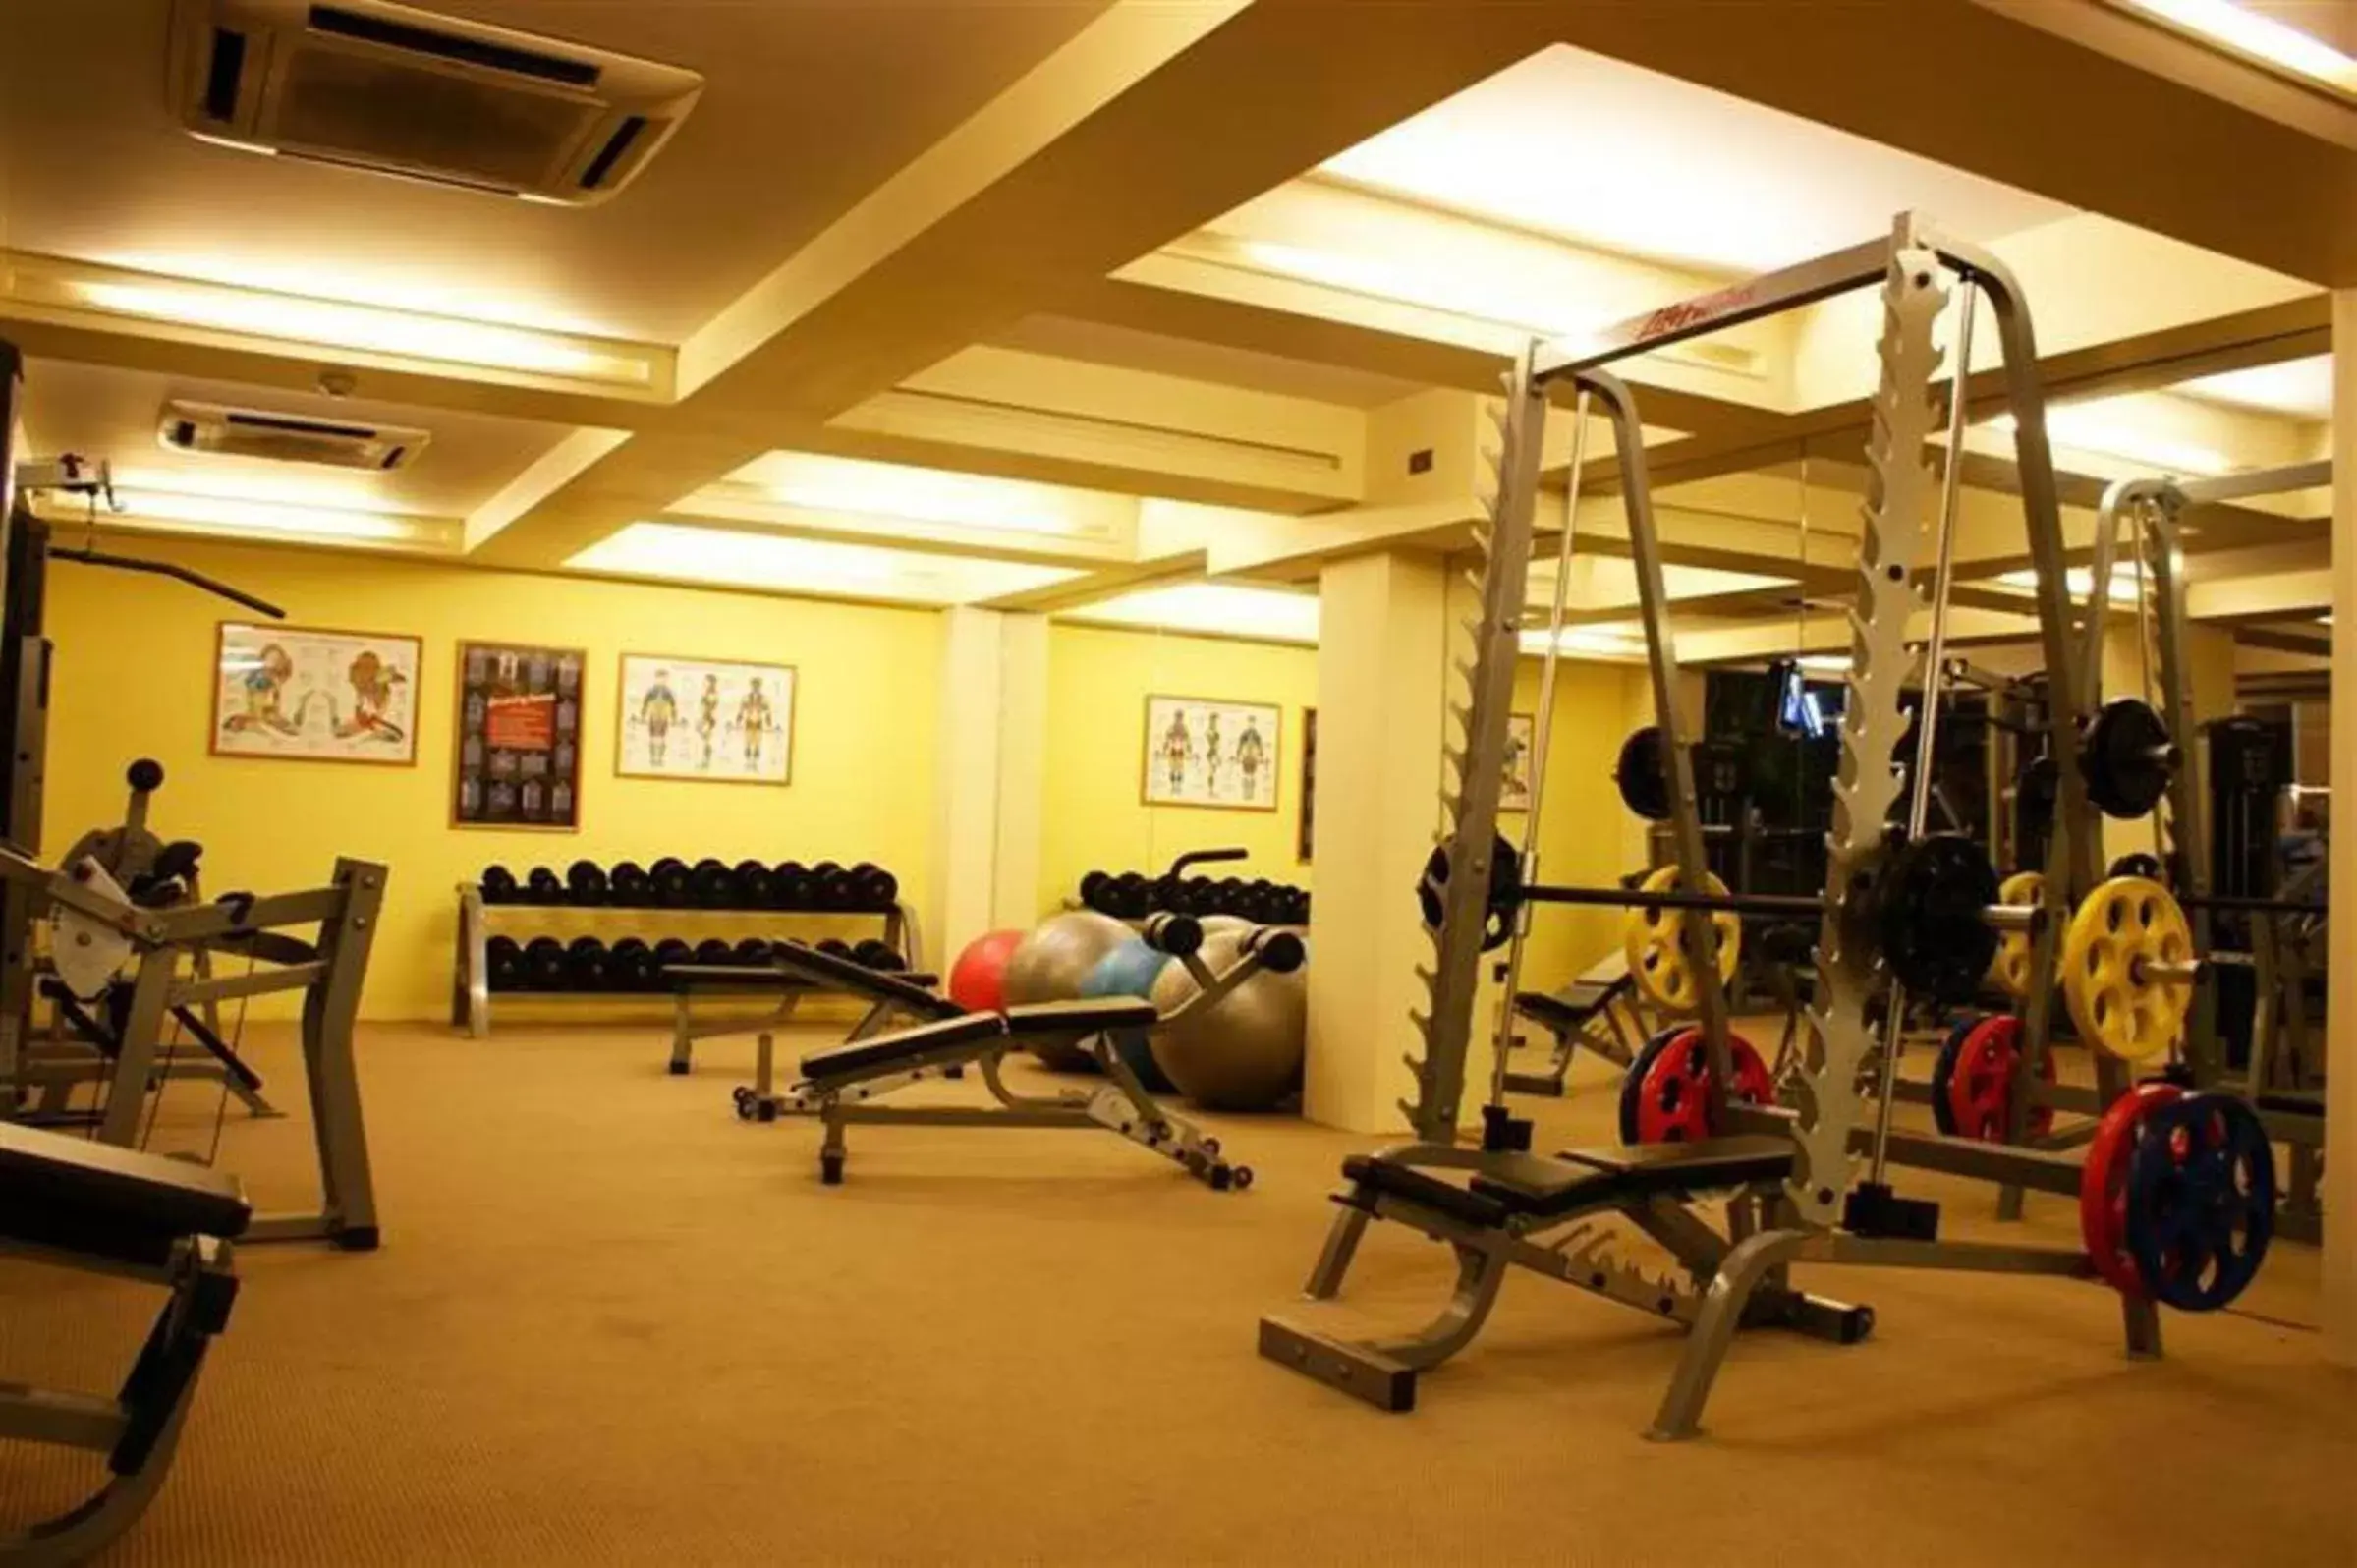 Fitness centre/facilities, Fitness Center/Facilities in LK Mantra Pura Resort